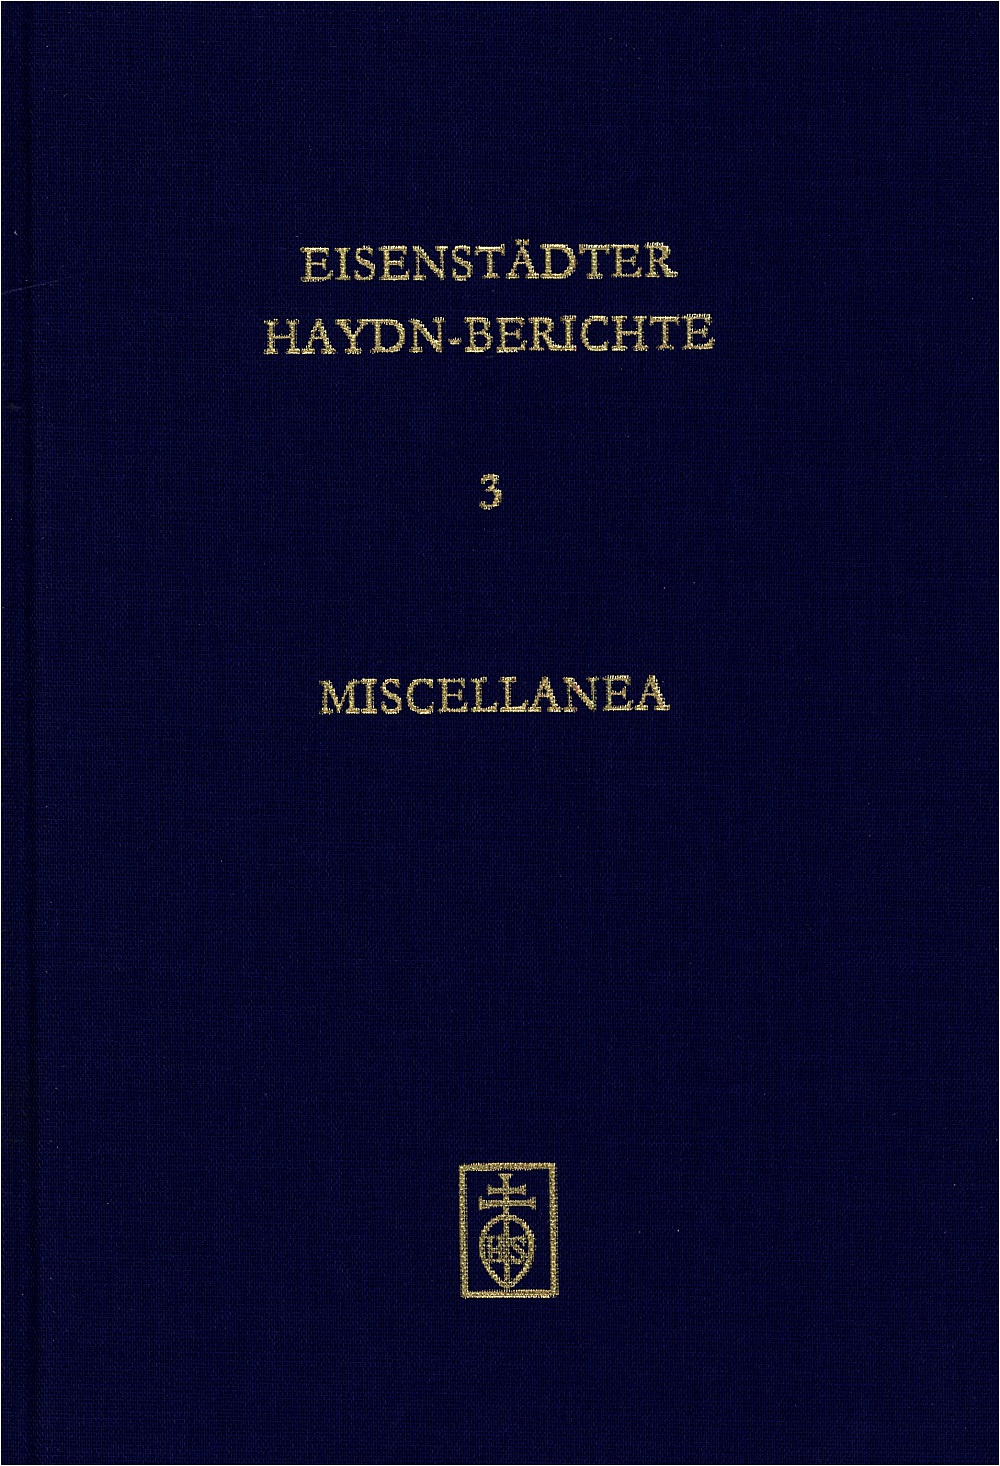 Cover Miscellanea